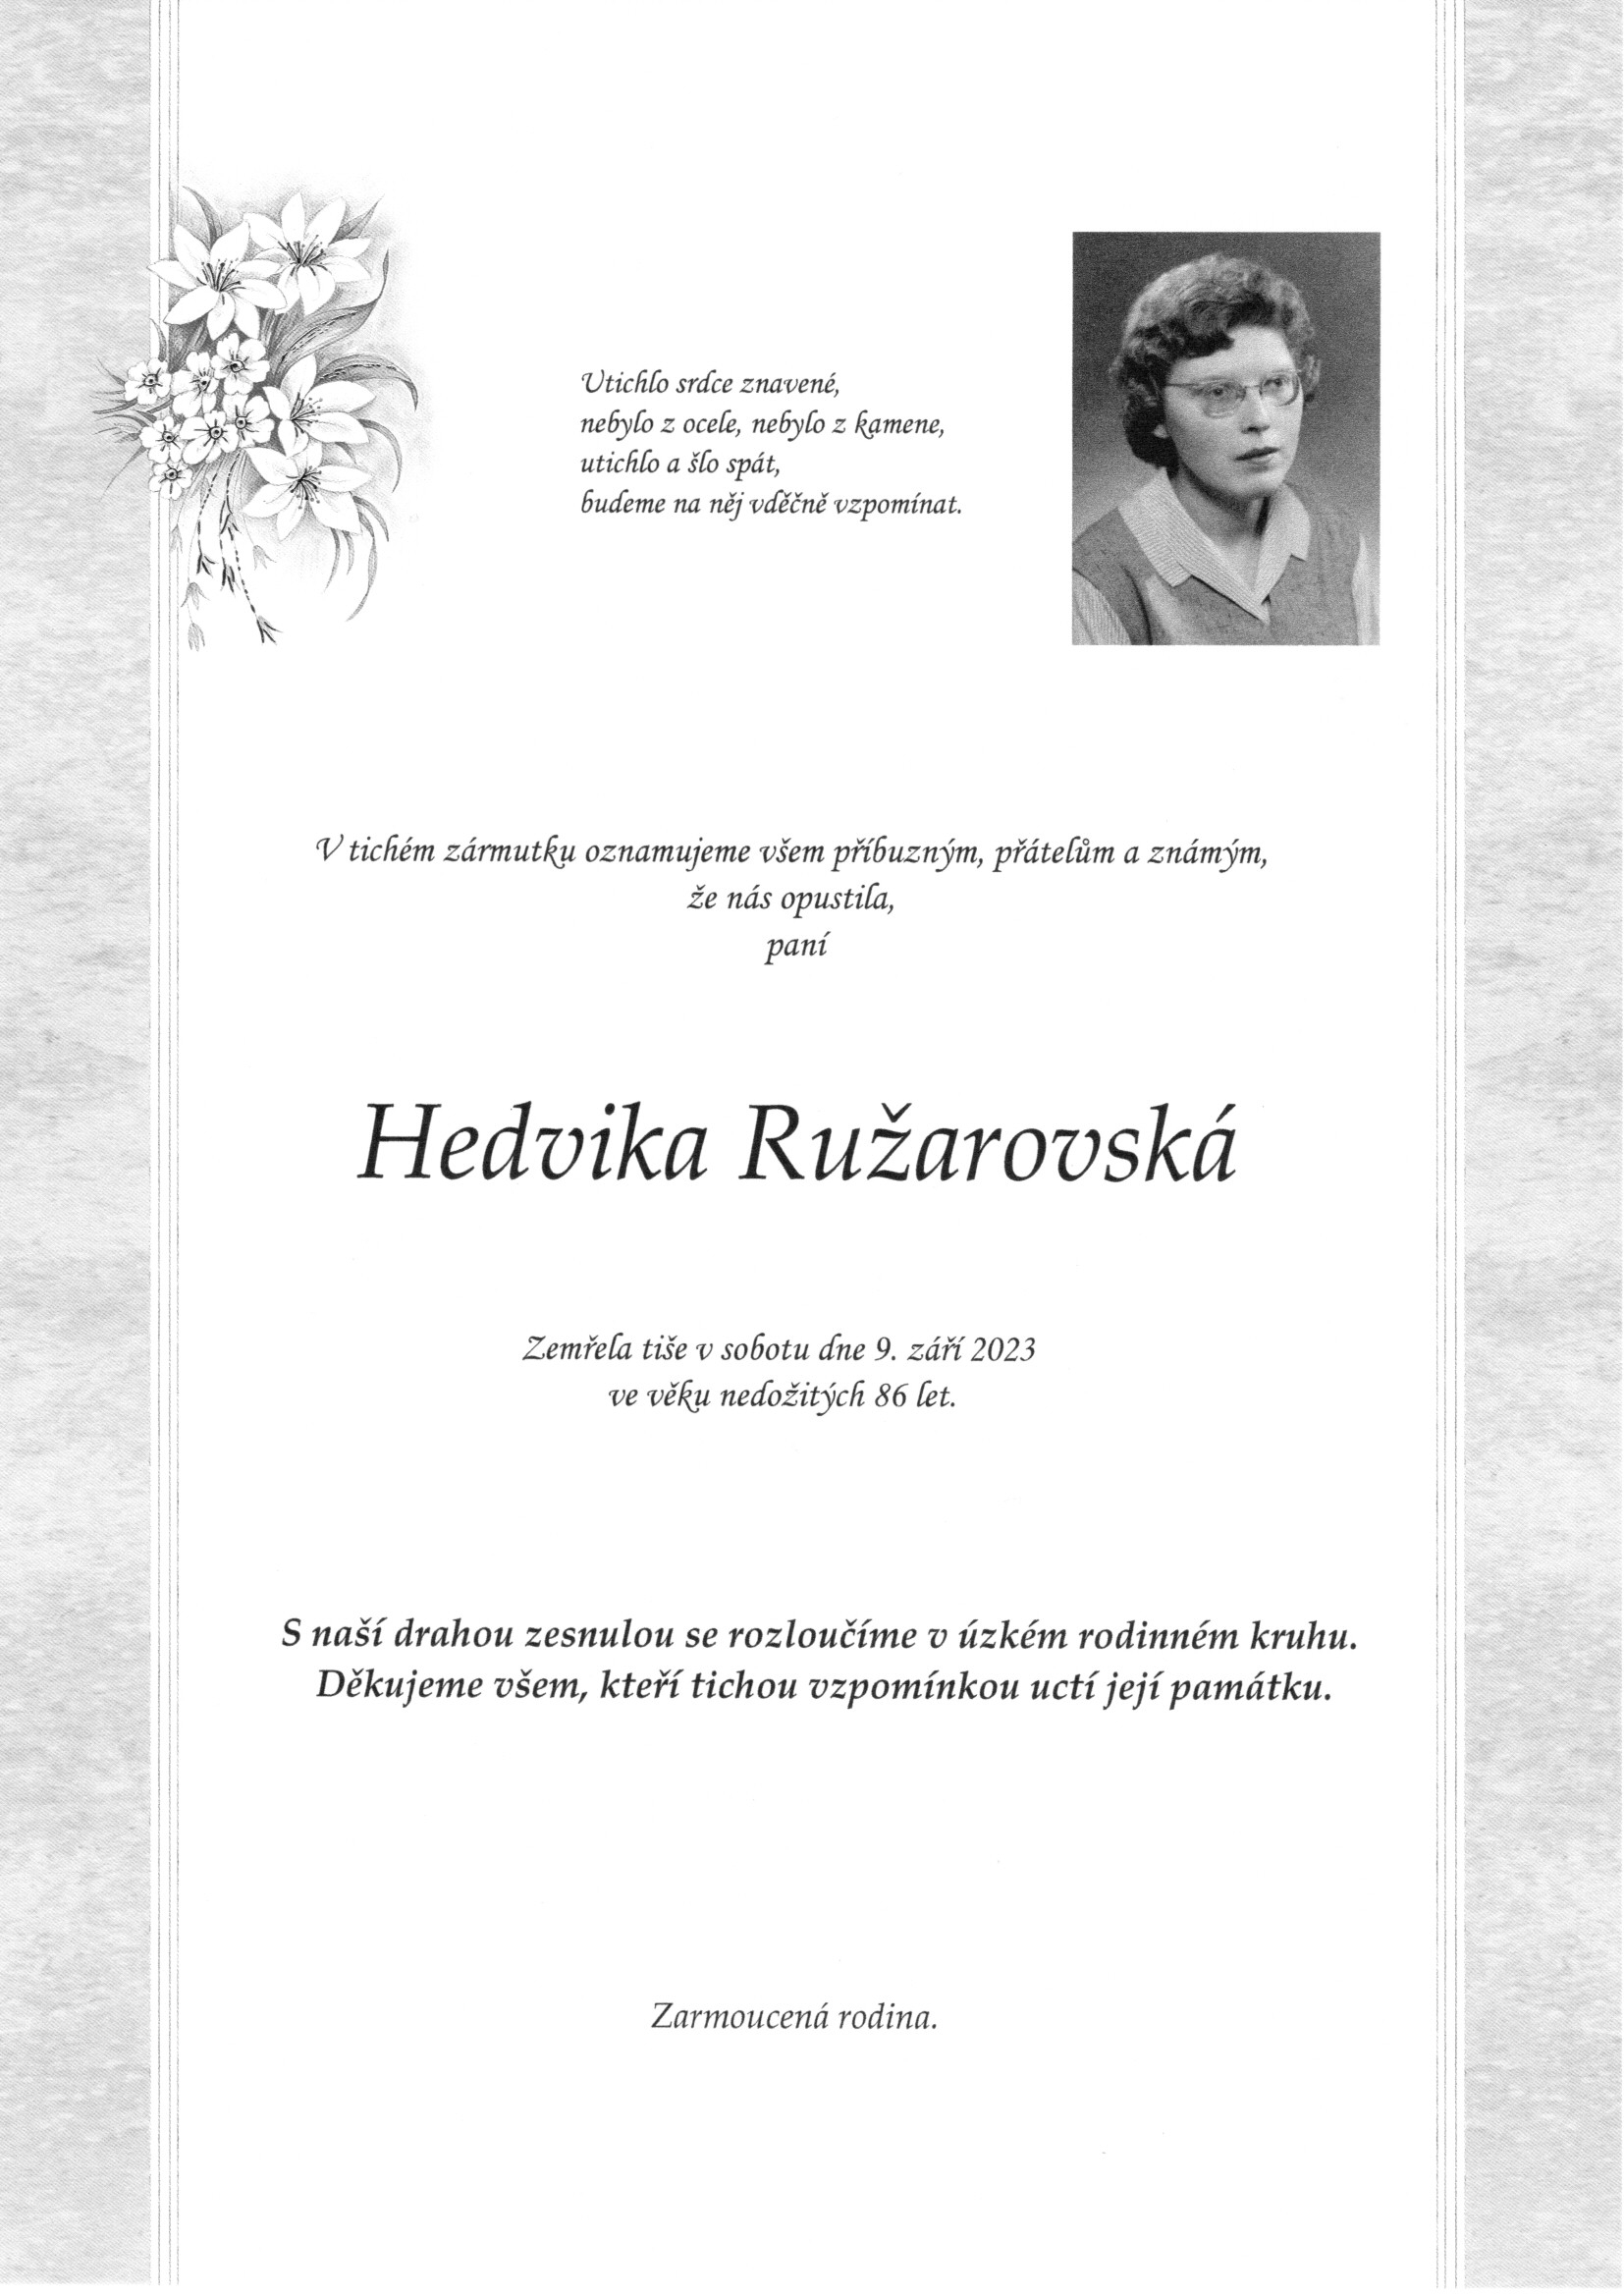 Hedvika Ružarovská